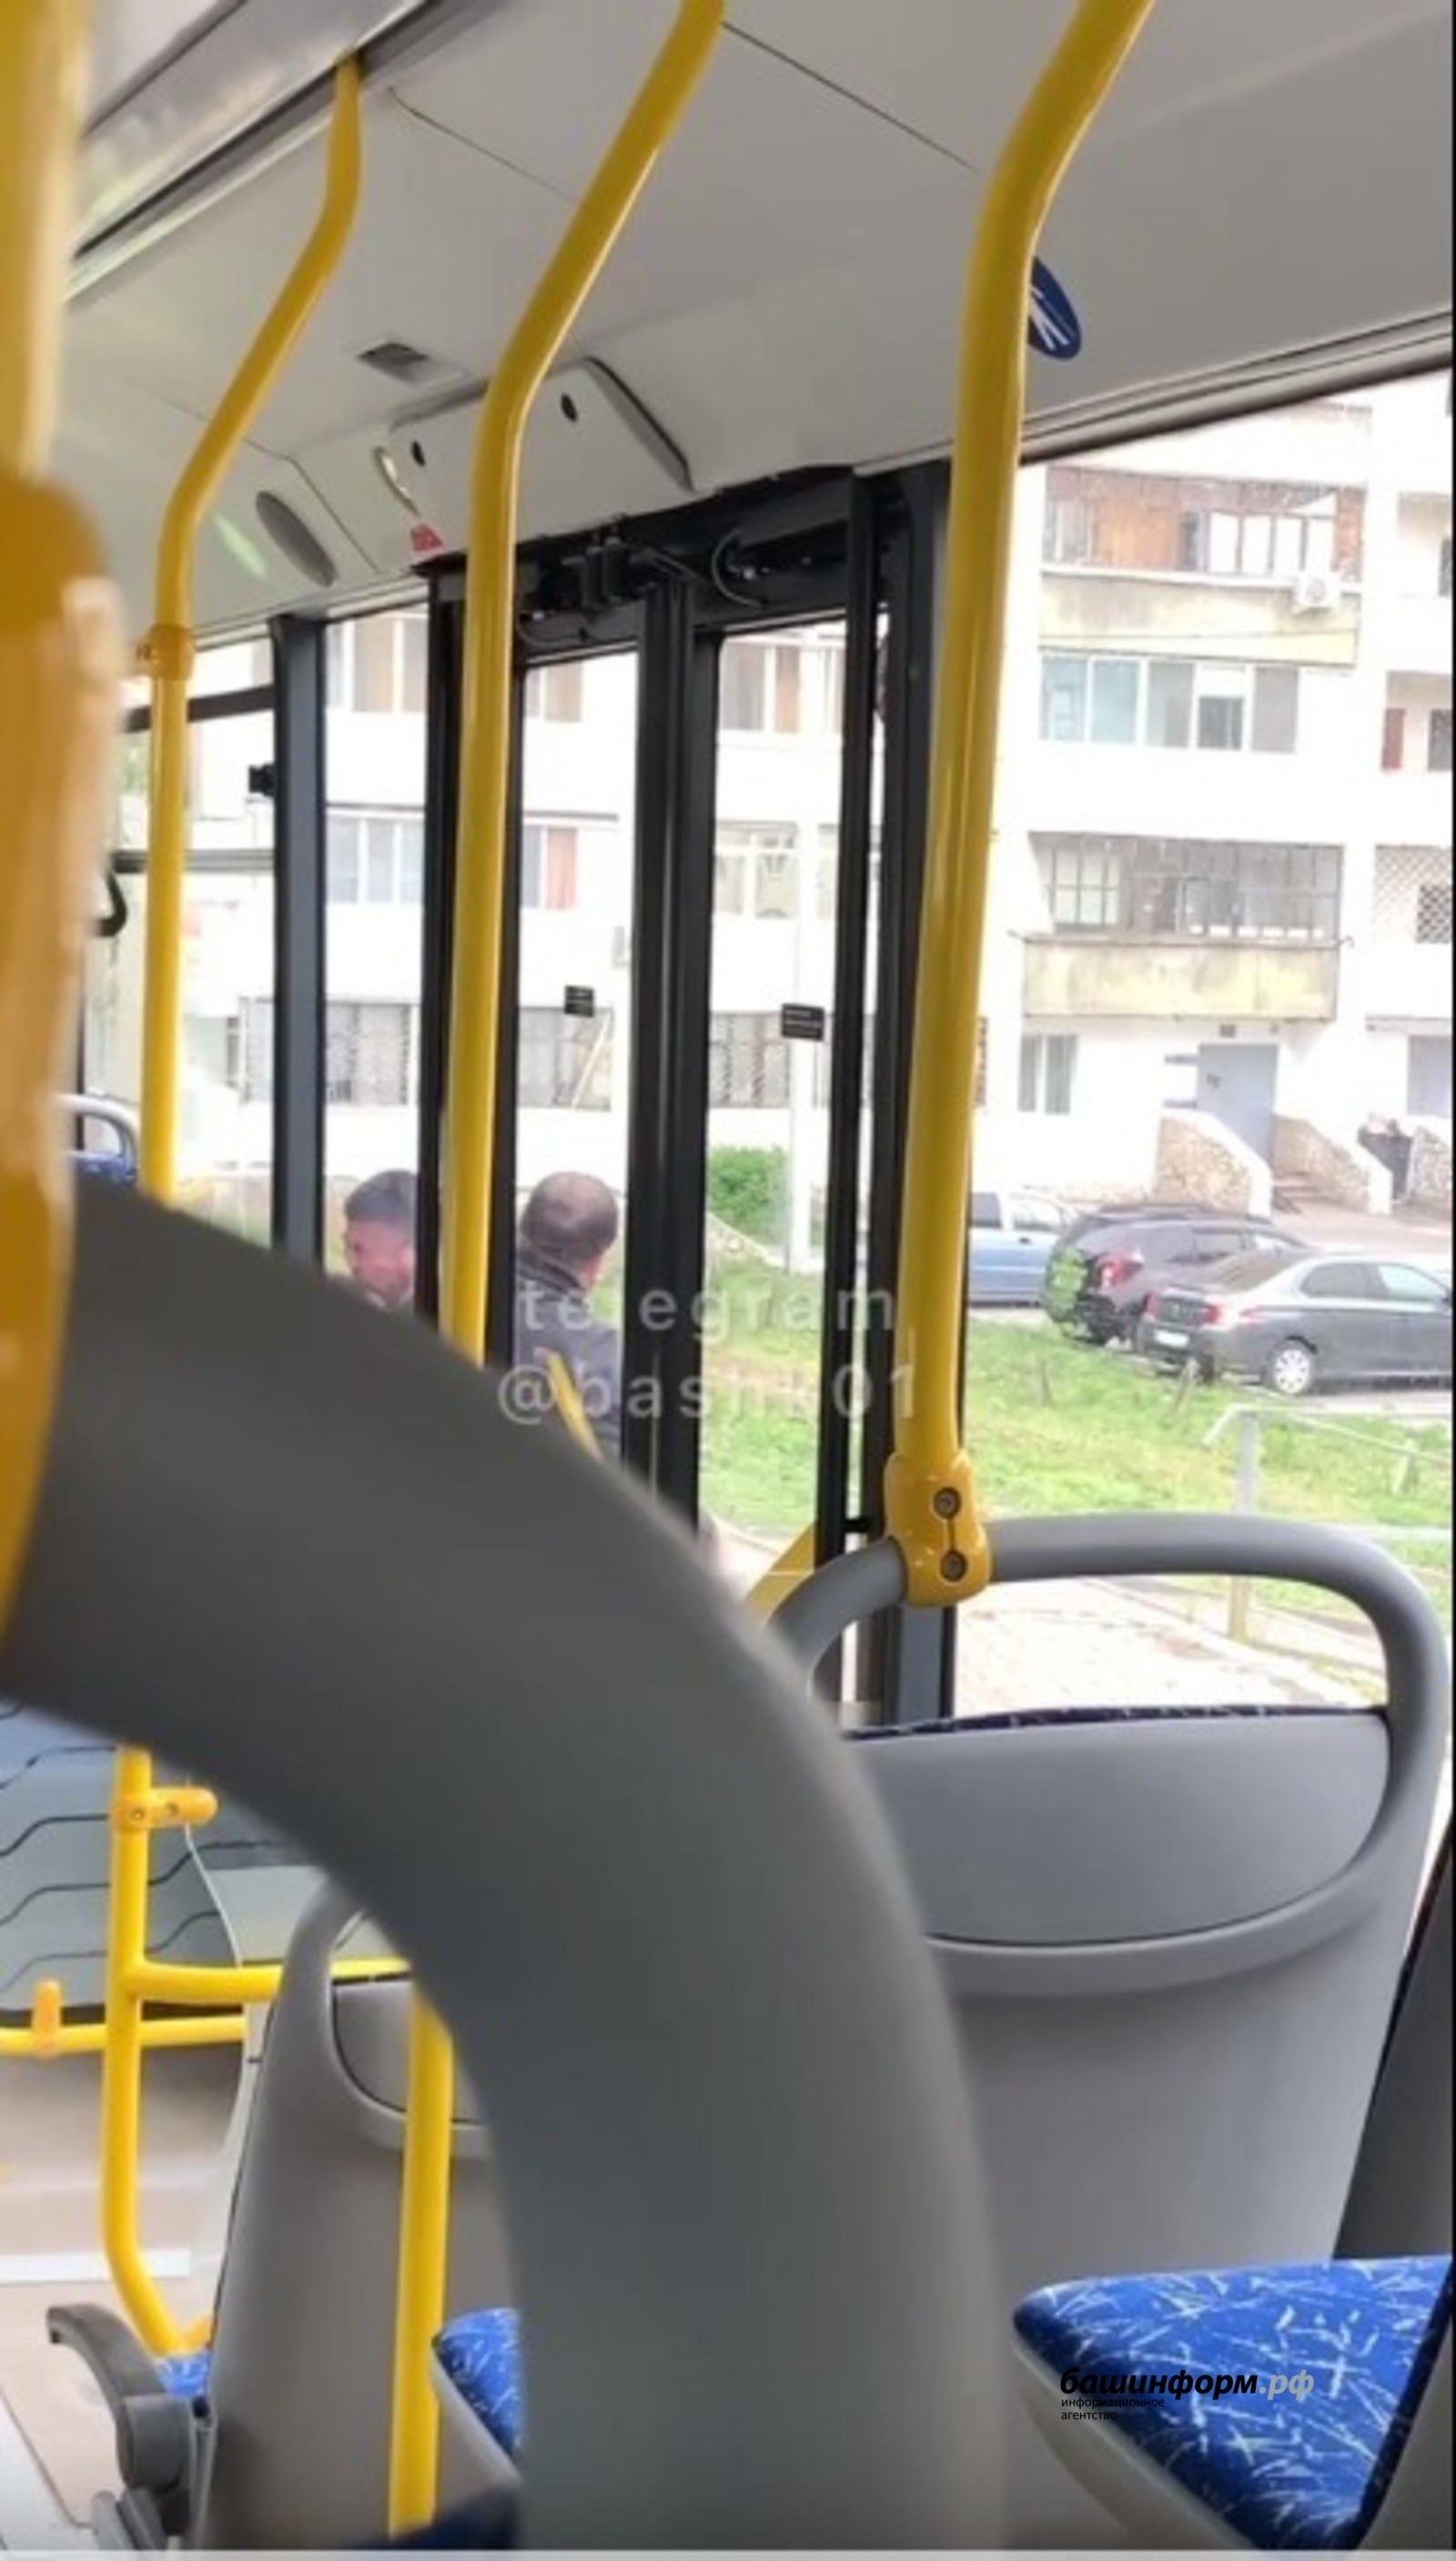 В Башкирии водитель и пассажир автобуса устроили драку (ВИДЕО)